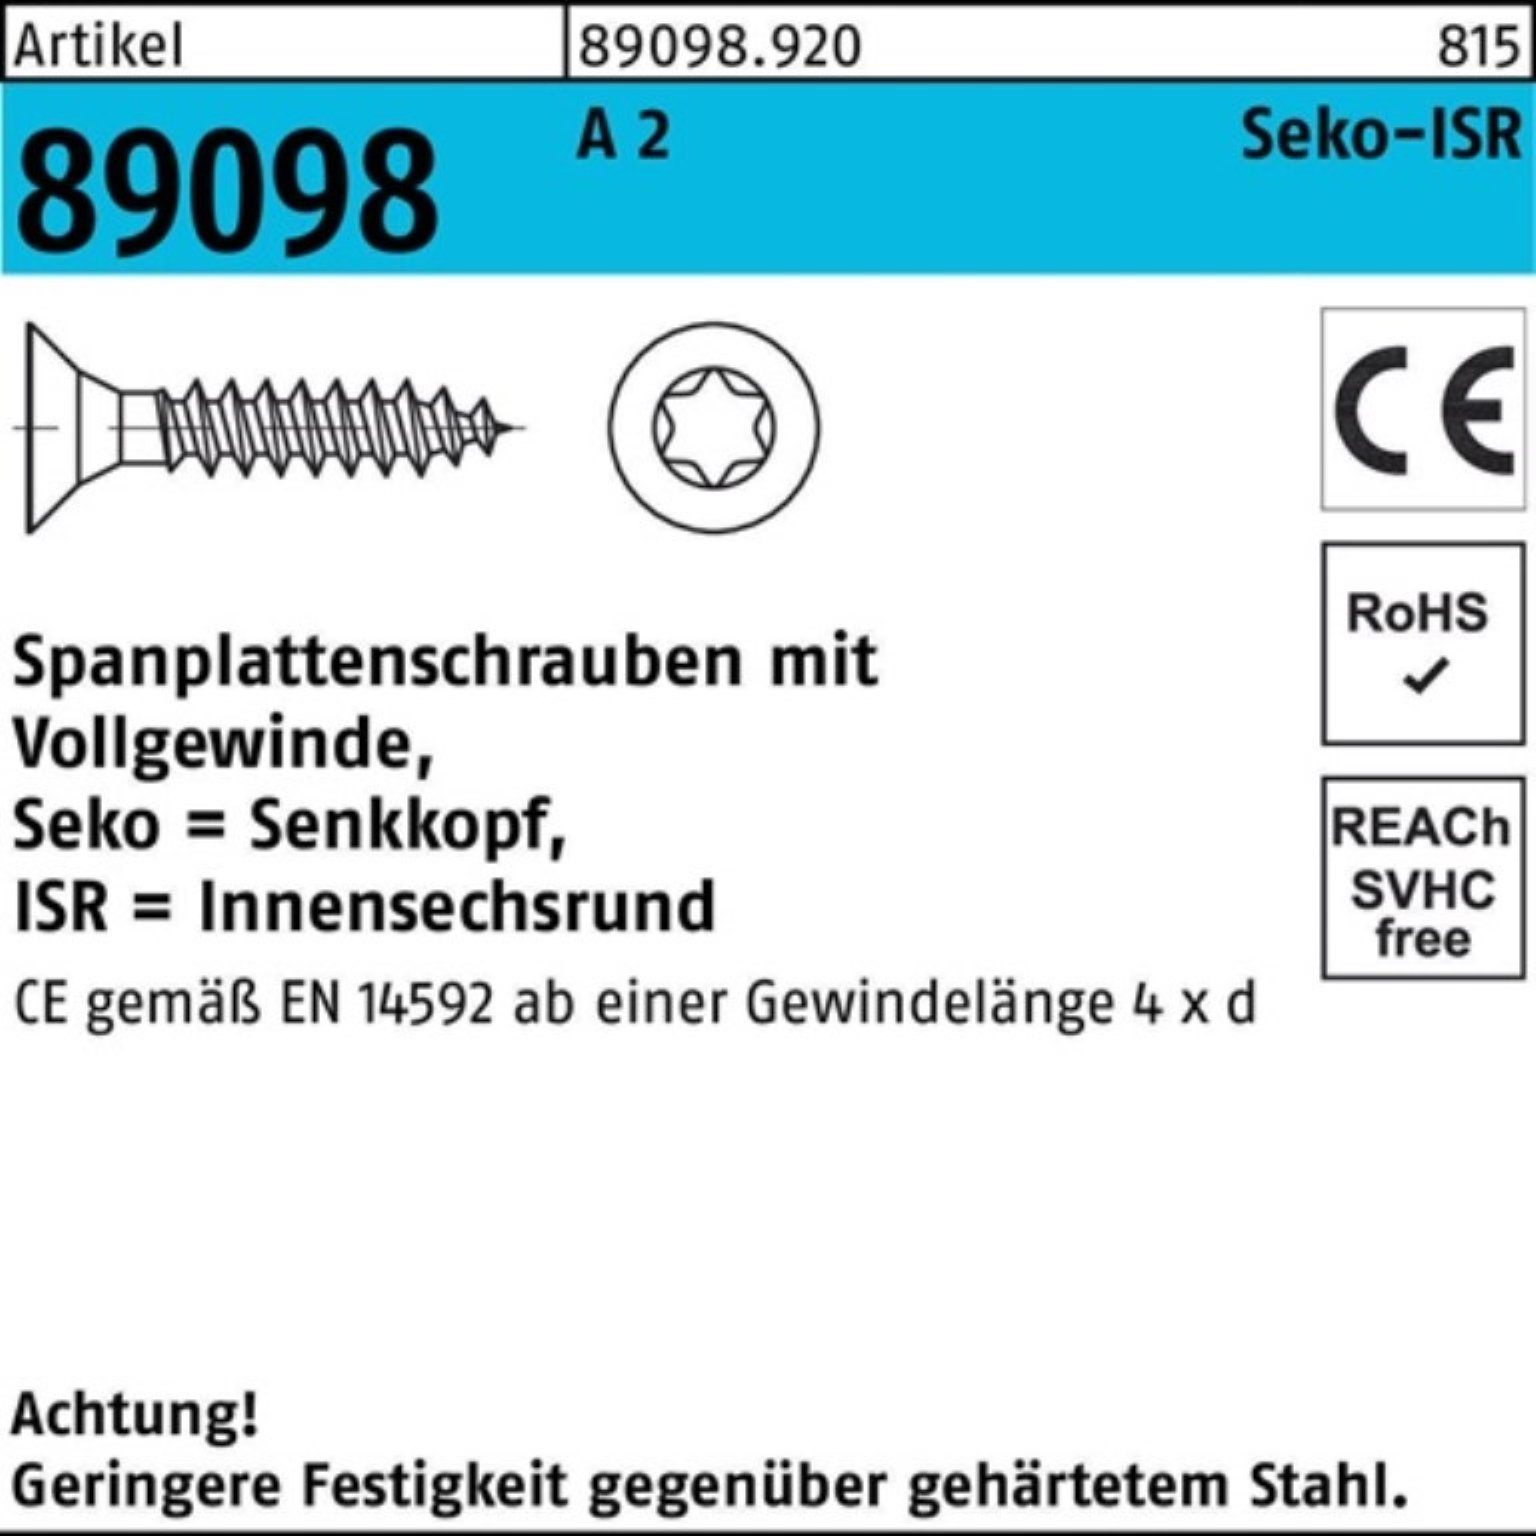 Reyher Spanplattenschraube 1000er Pack Spanplattenschraube R 89098 SEKO ISR VG 5x 50-T25 A 2 1000